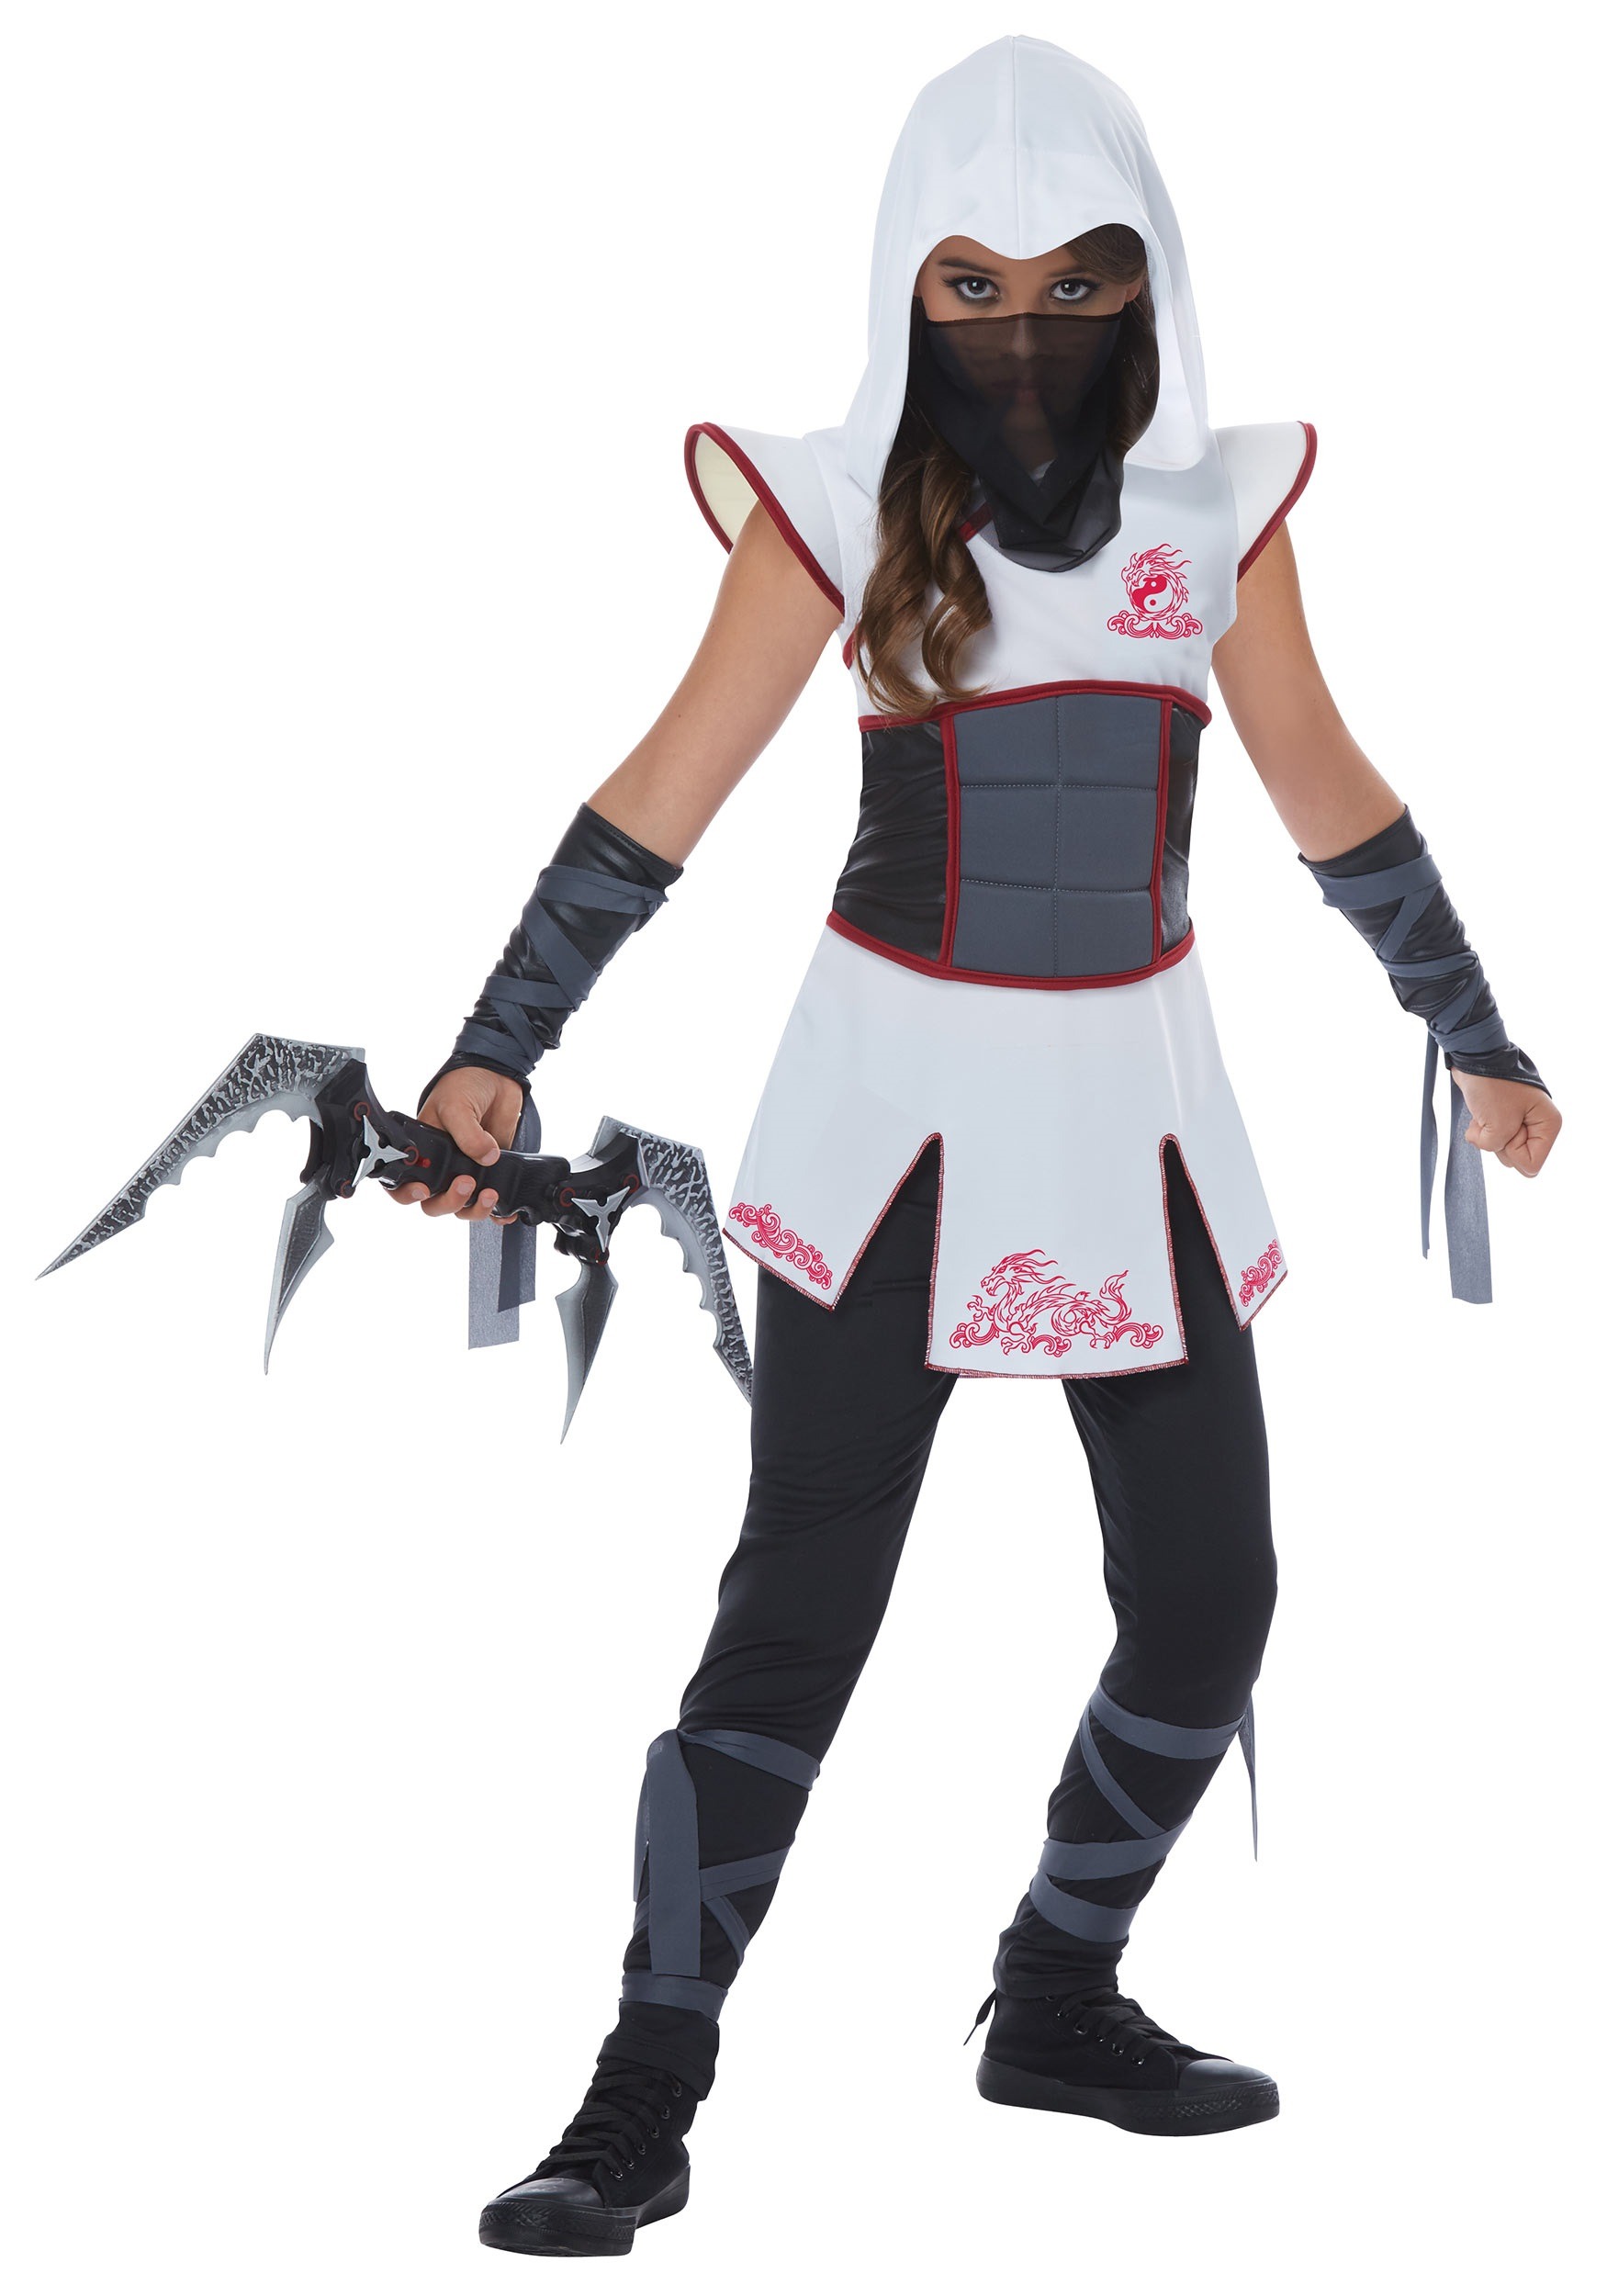 https://images.halloweencostumes.com/products/40915/1-1/girls-white-ninja-costume.jpg